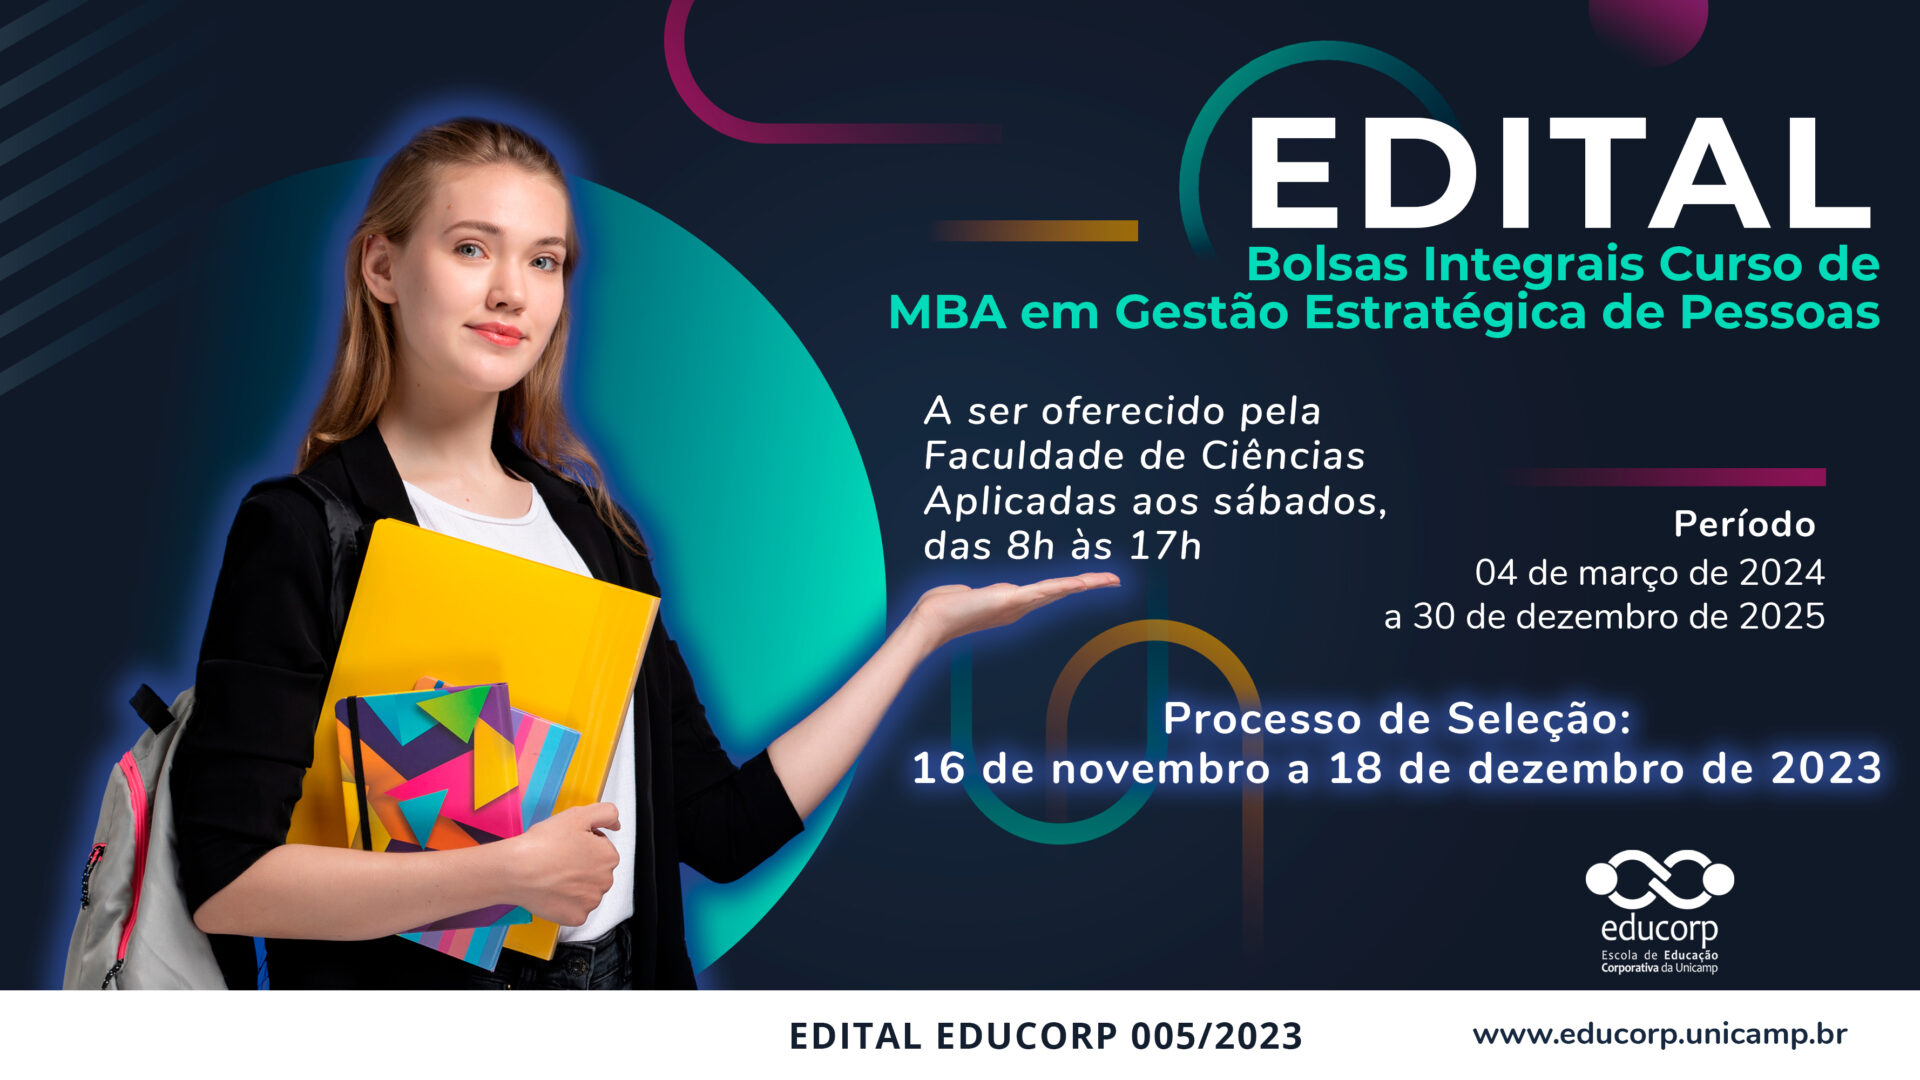 EDITAL EDUCORP 005/2023 - MBA em Gestão Estratégica de Pessoas